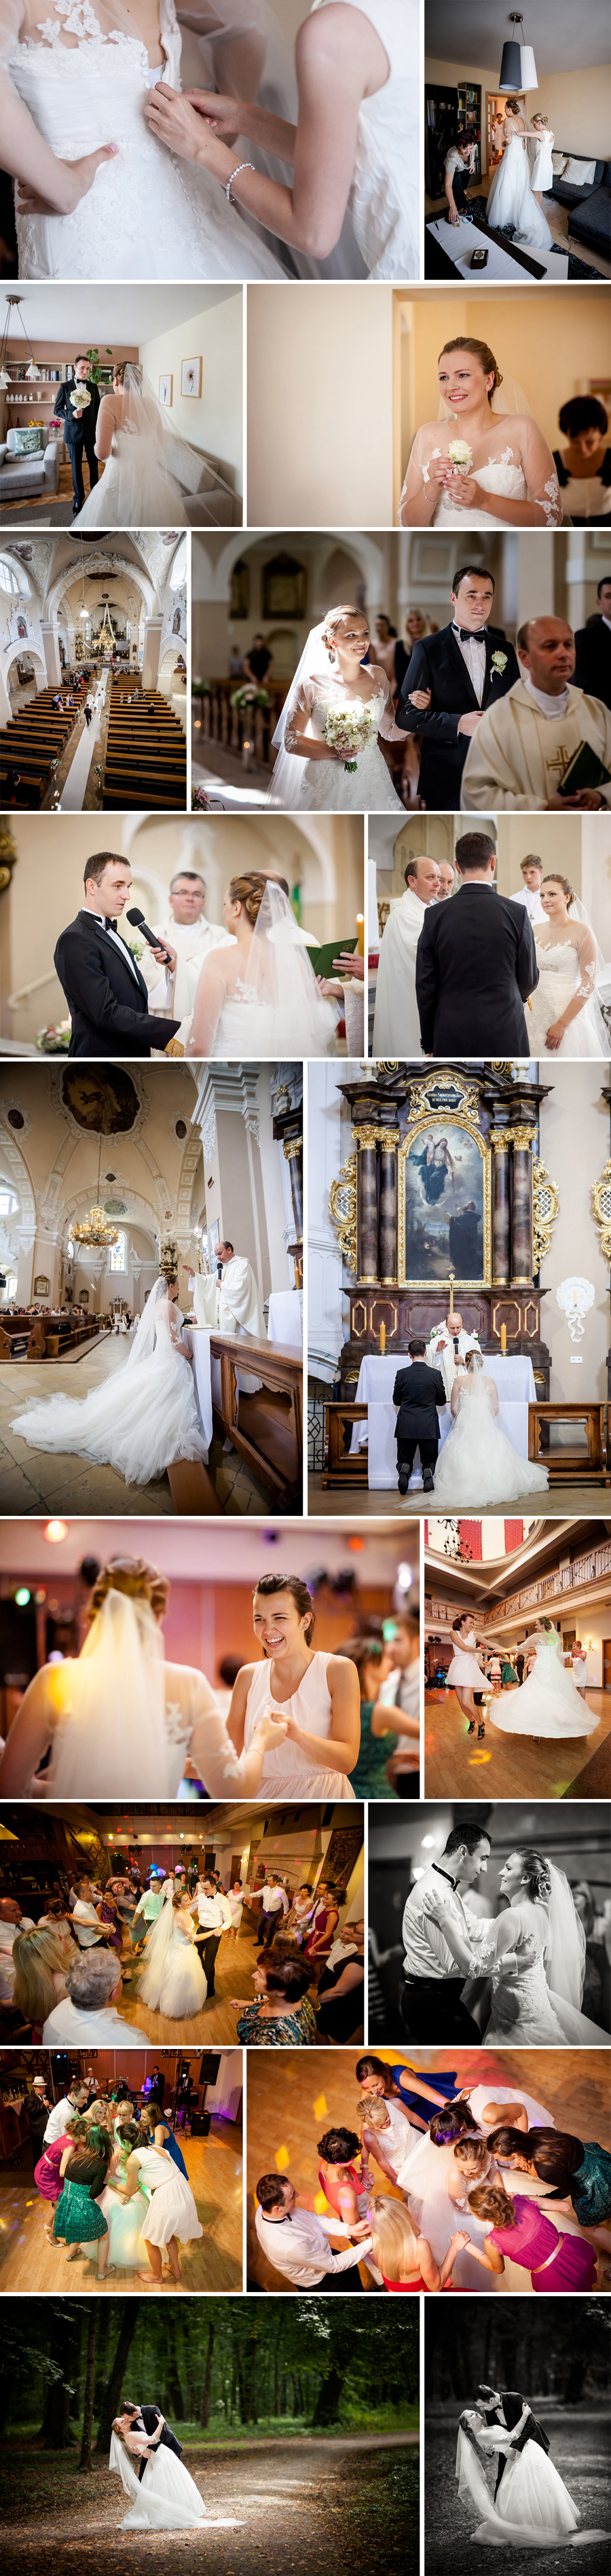 dwóch fotografów na wesele; fotografia ślubna bielsko; fotografia ślubna czechowice; dwóch fotograf na ślub; zdjęcia ślubne; fotograf ślubny goczałkowice